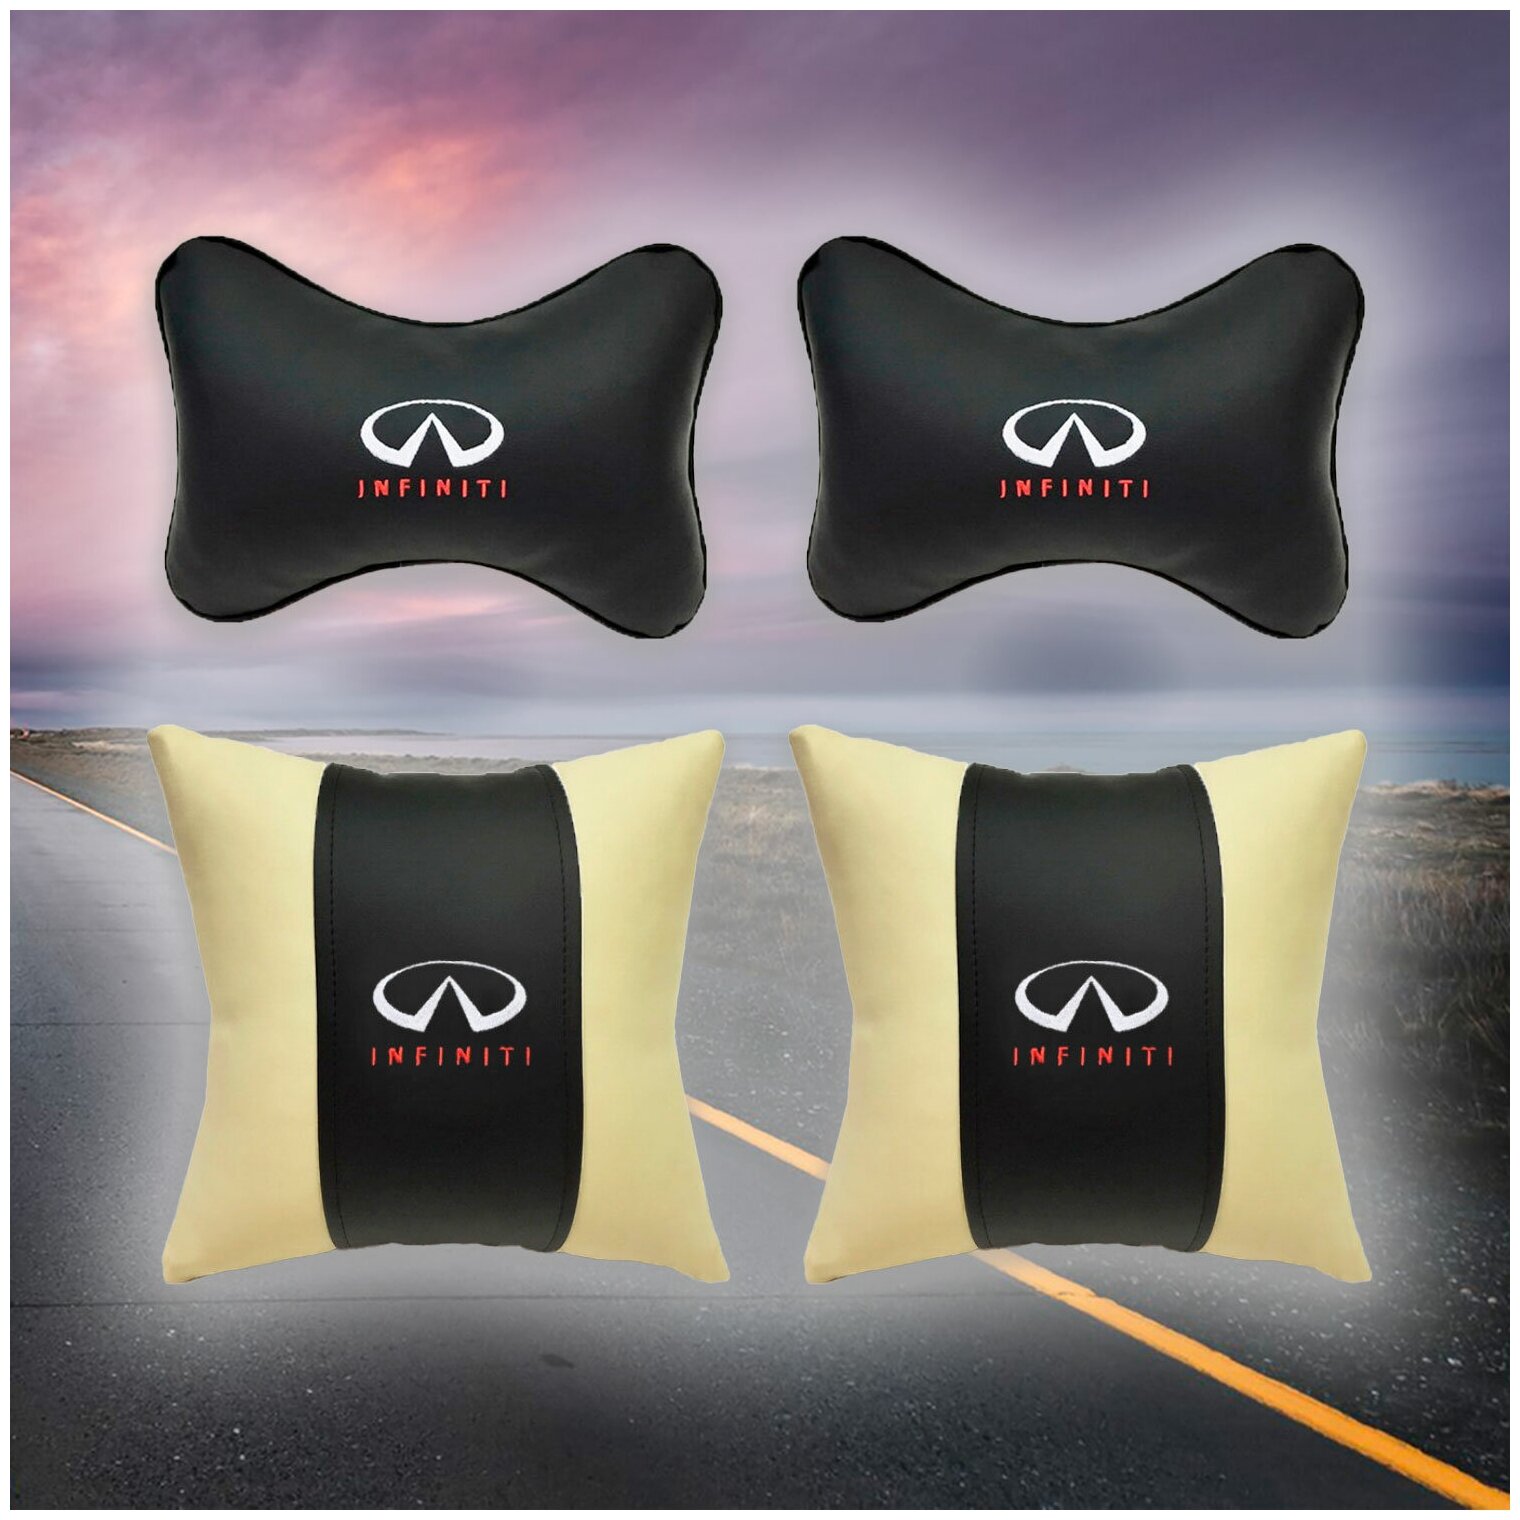 Комплект автомобильных подушек из экокожи и вышивкой для Infiniti (инфинити) (2 подушки на подголовник и 2 автомобильные подушки)